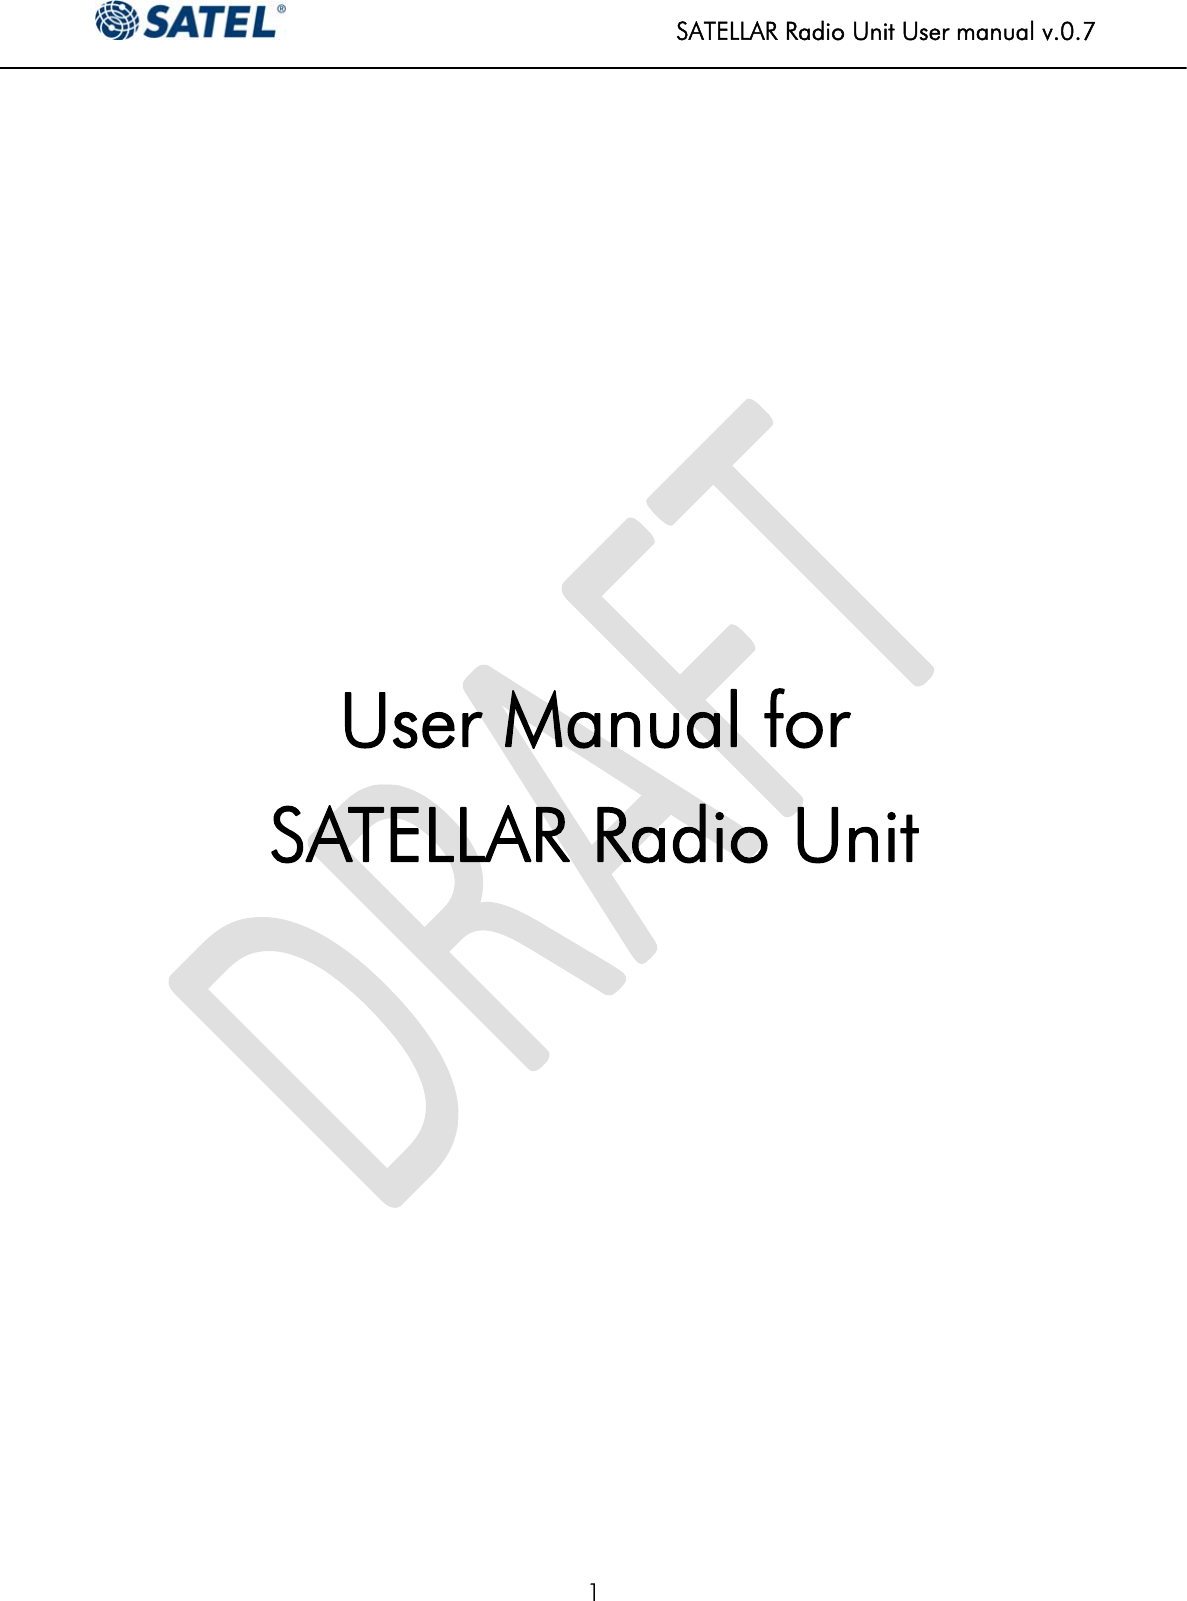   SATELLAR Radio Unit User manual v.0.7  1      User Manual for  SATELLAR Radio Unit                      